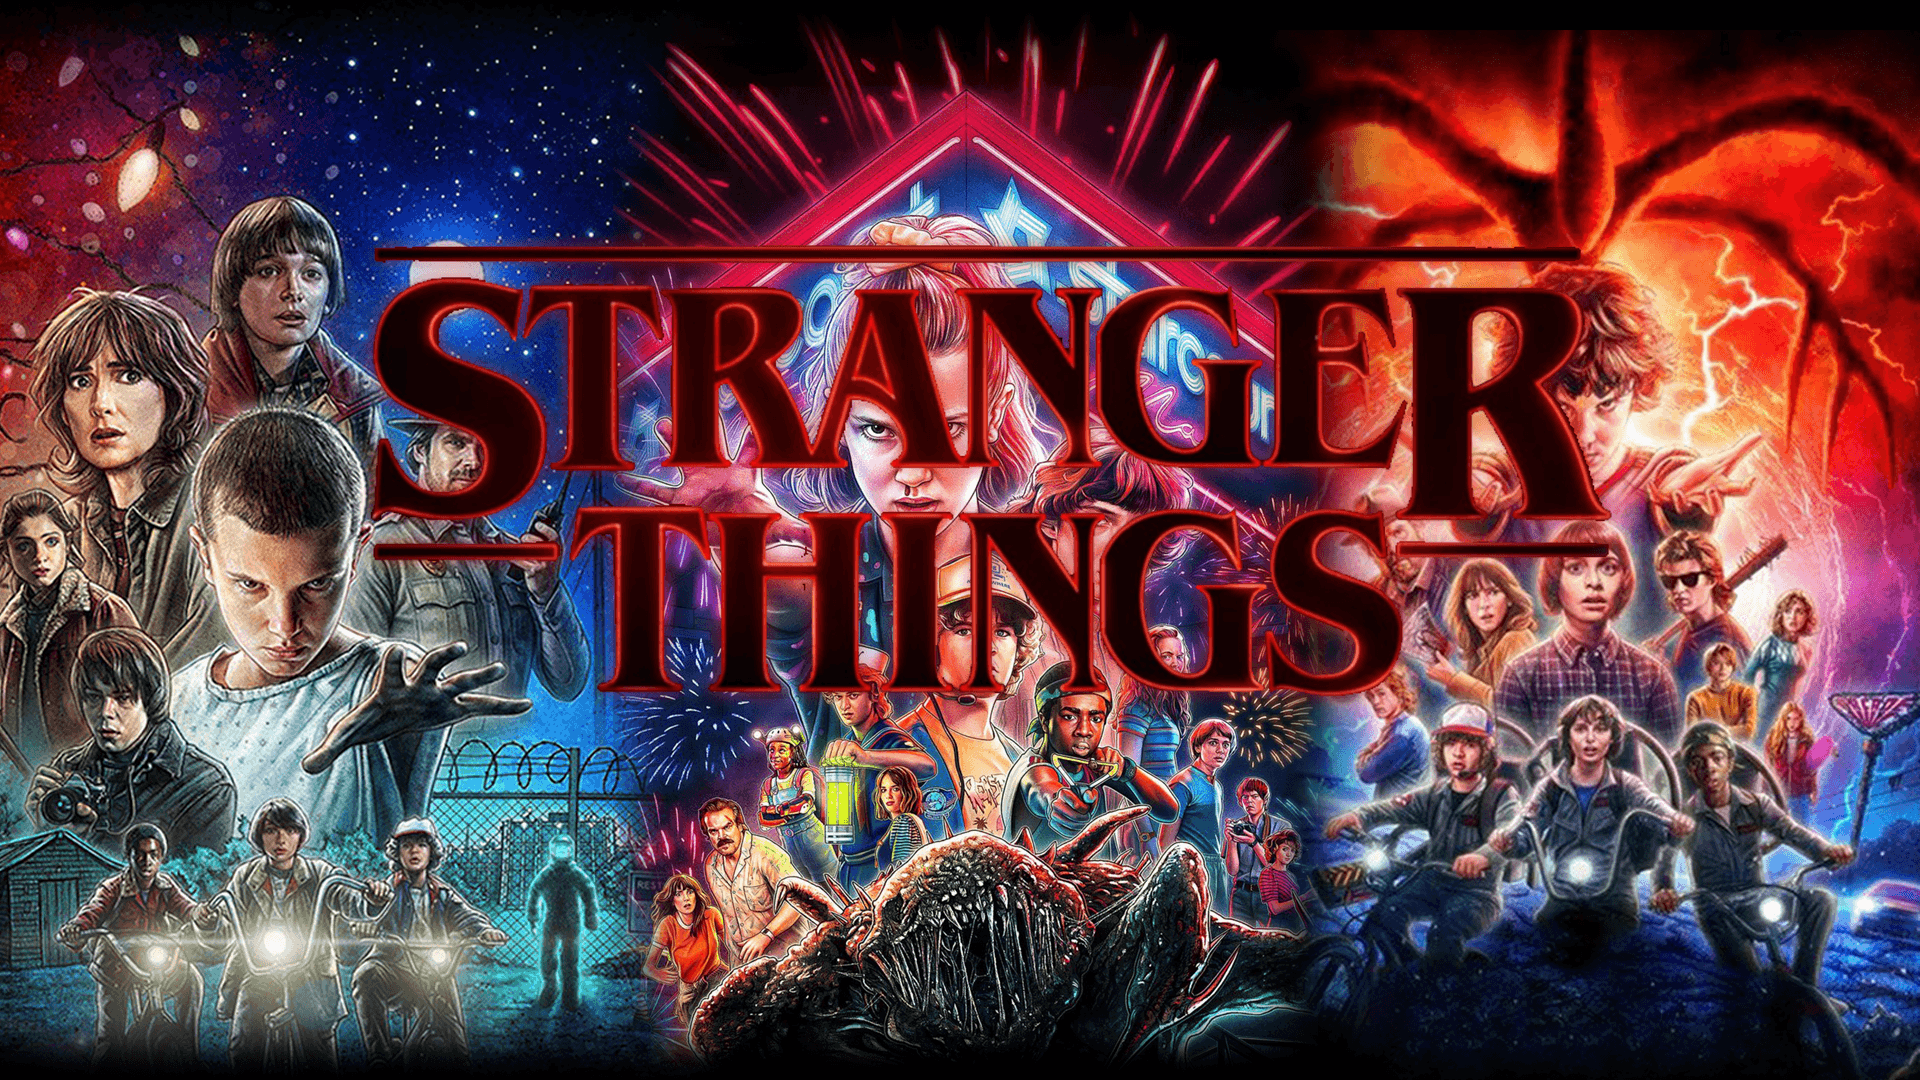 Stranger Things Season 1 Wallpapers - Top Free Stranger Things Season 1